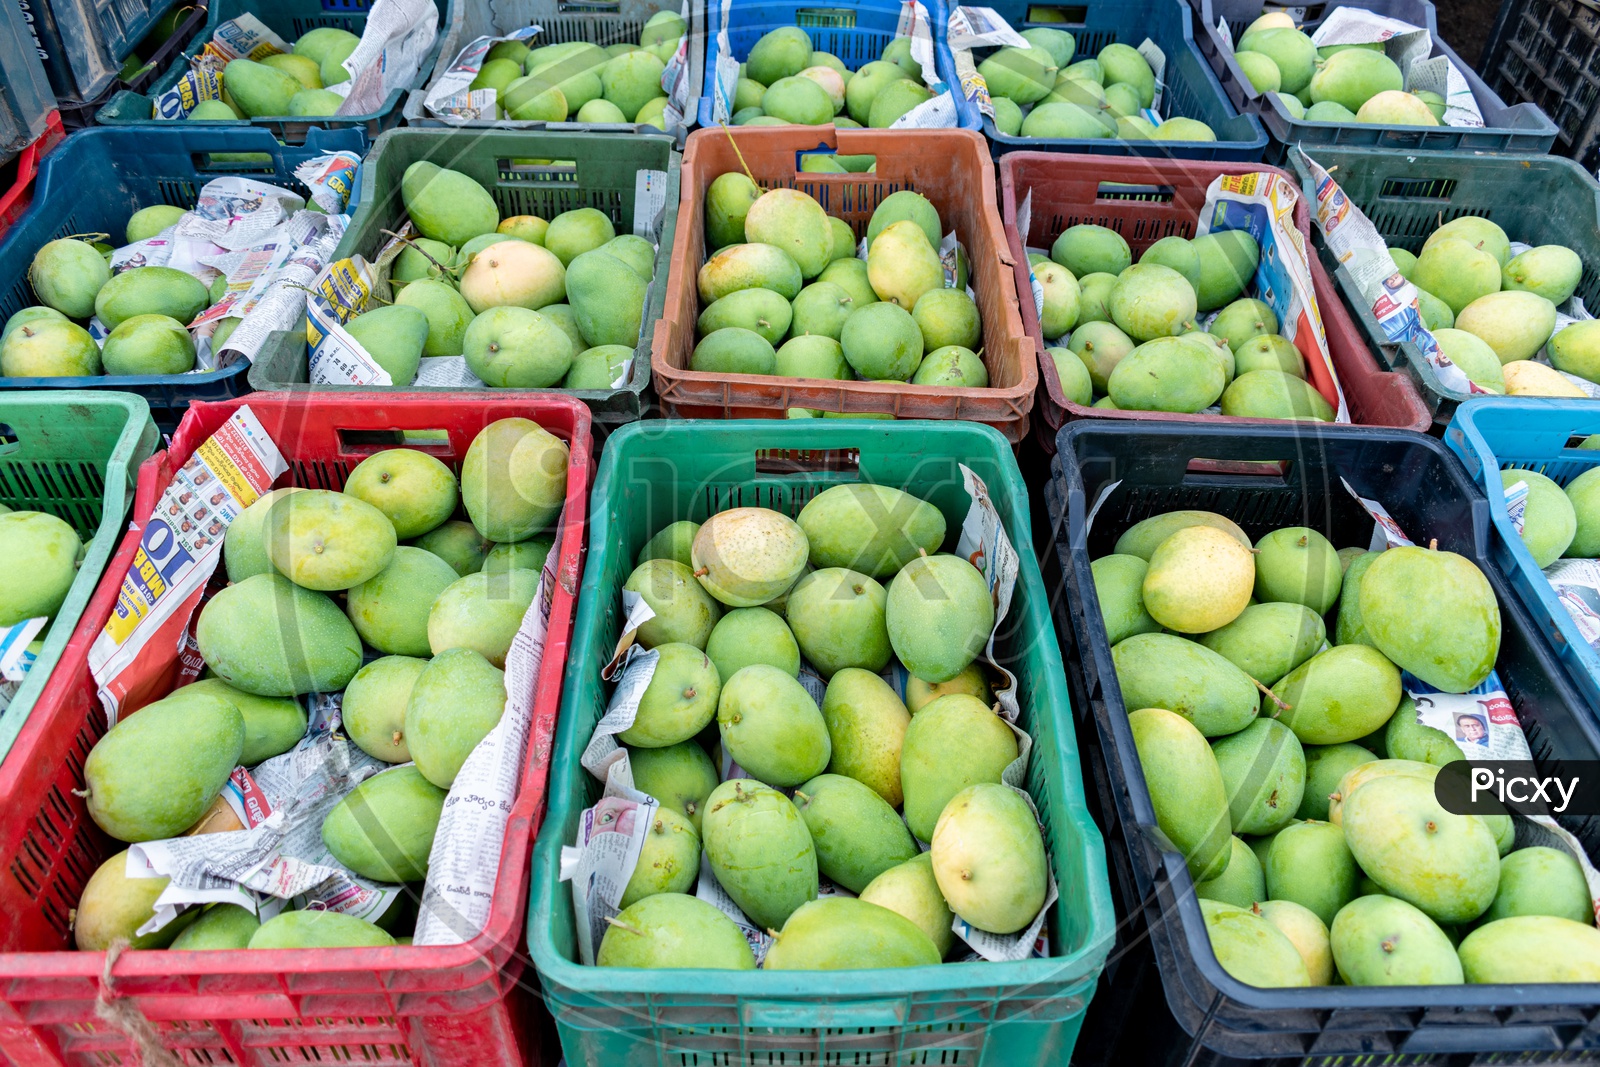 Mangoes in baskets at Kothapet Fruit market, Dilsukhnagar, Hyderabad.